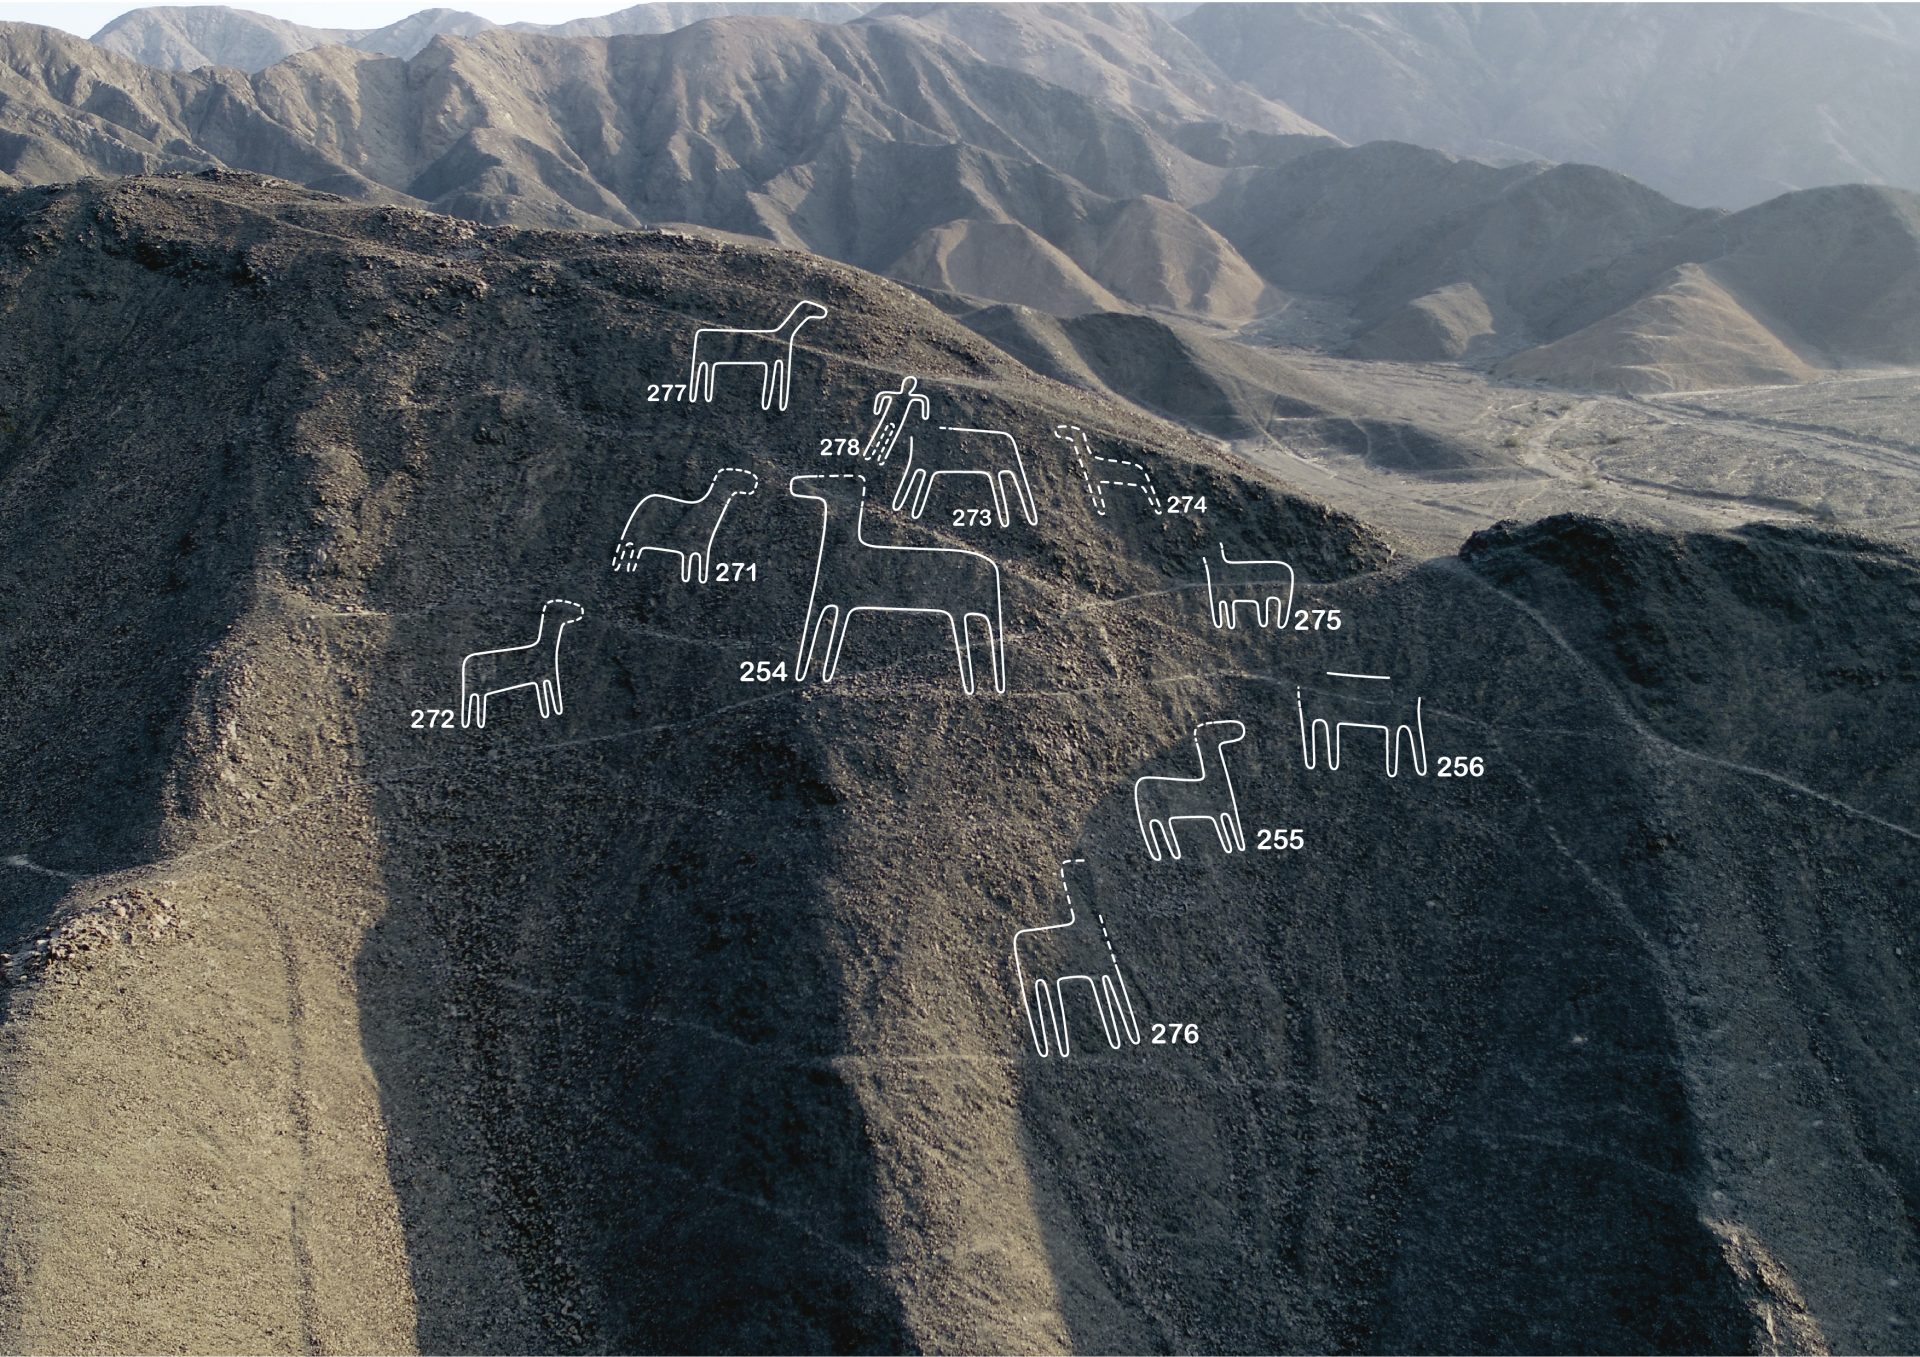 Investigadores japoneses descubren 168 nuevas figuras en Nazca